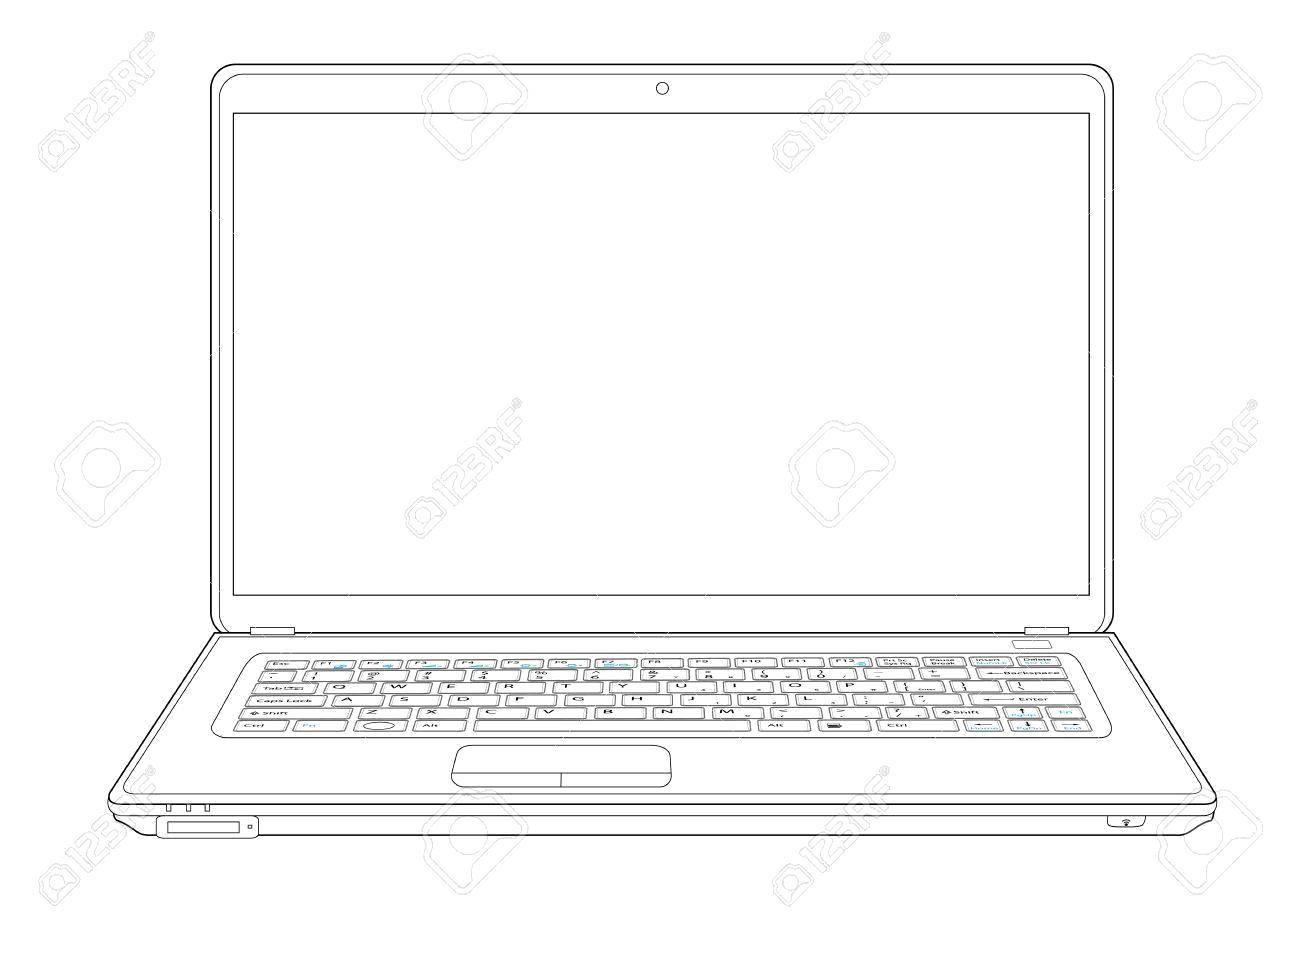 Coloring Laptop. Category Technique. Tags:  technique, laptop.